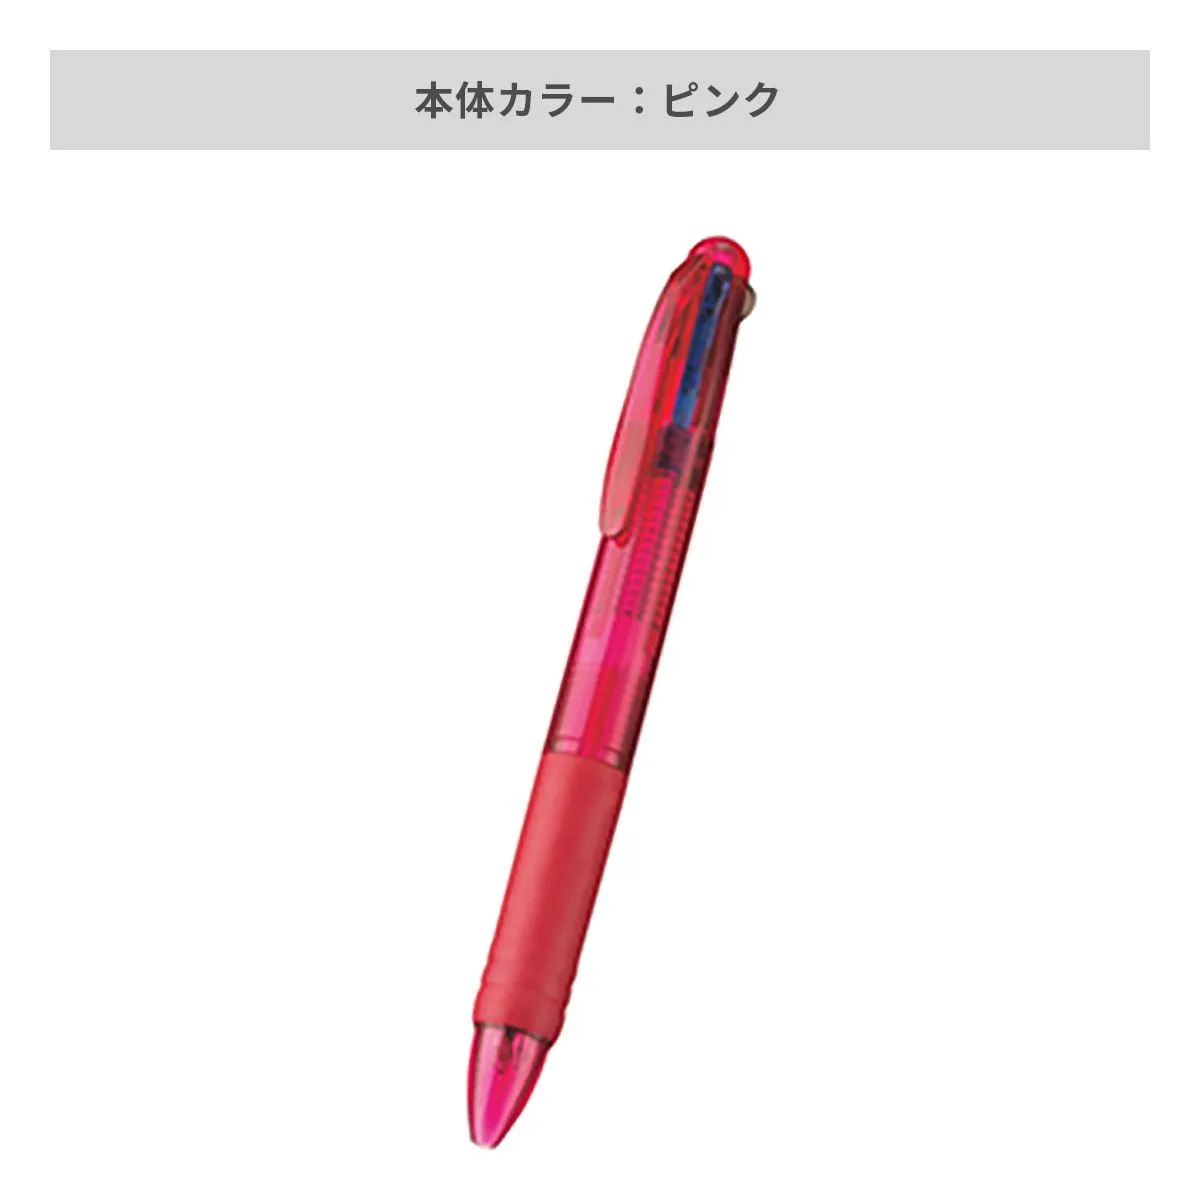 3色 プラスワン ボールペン【名入れボールペン / インクジェット印刷】 画像6